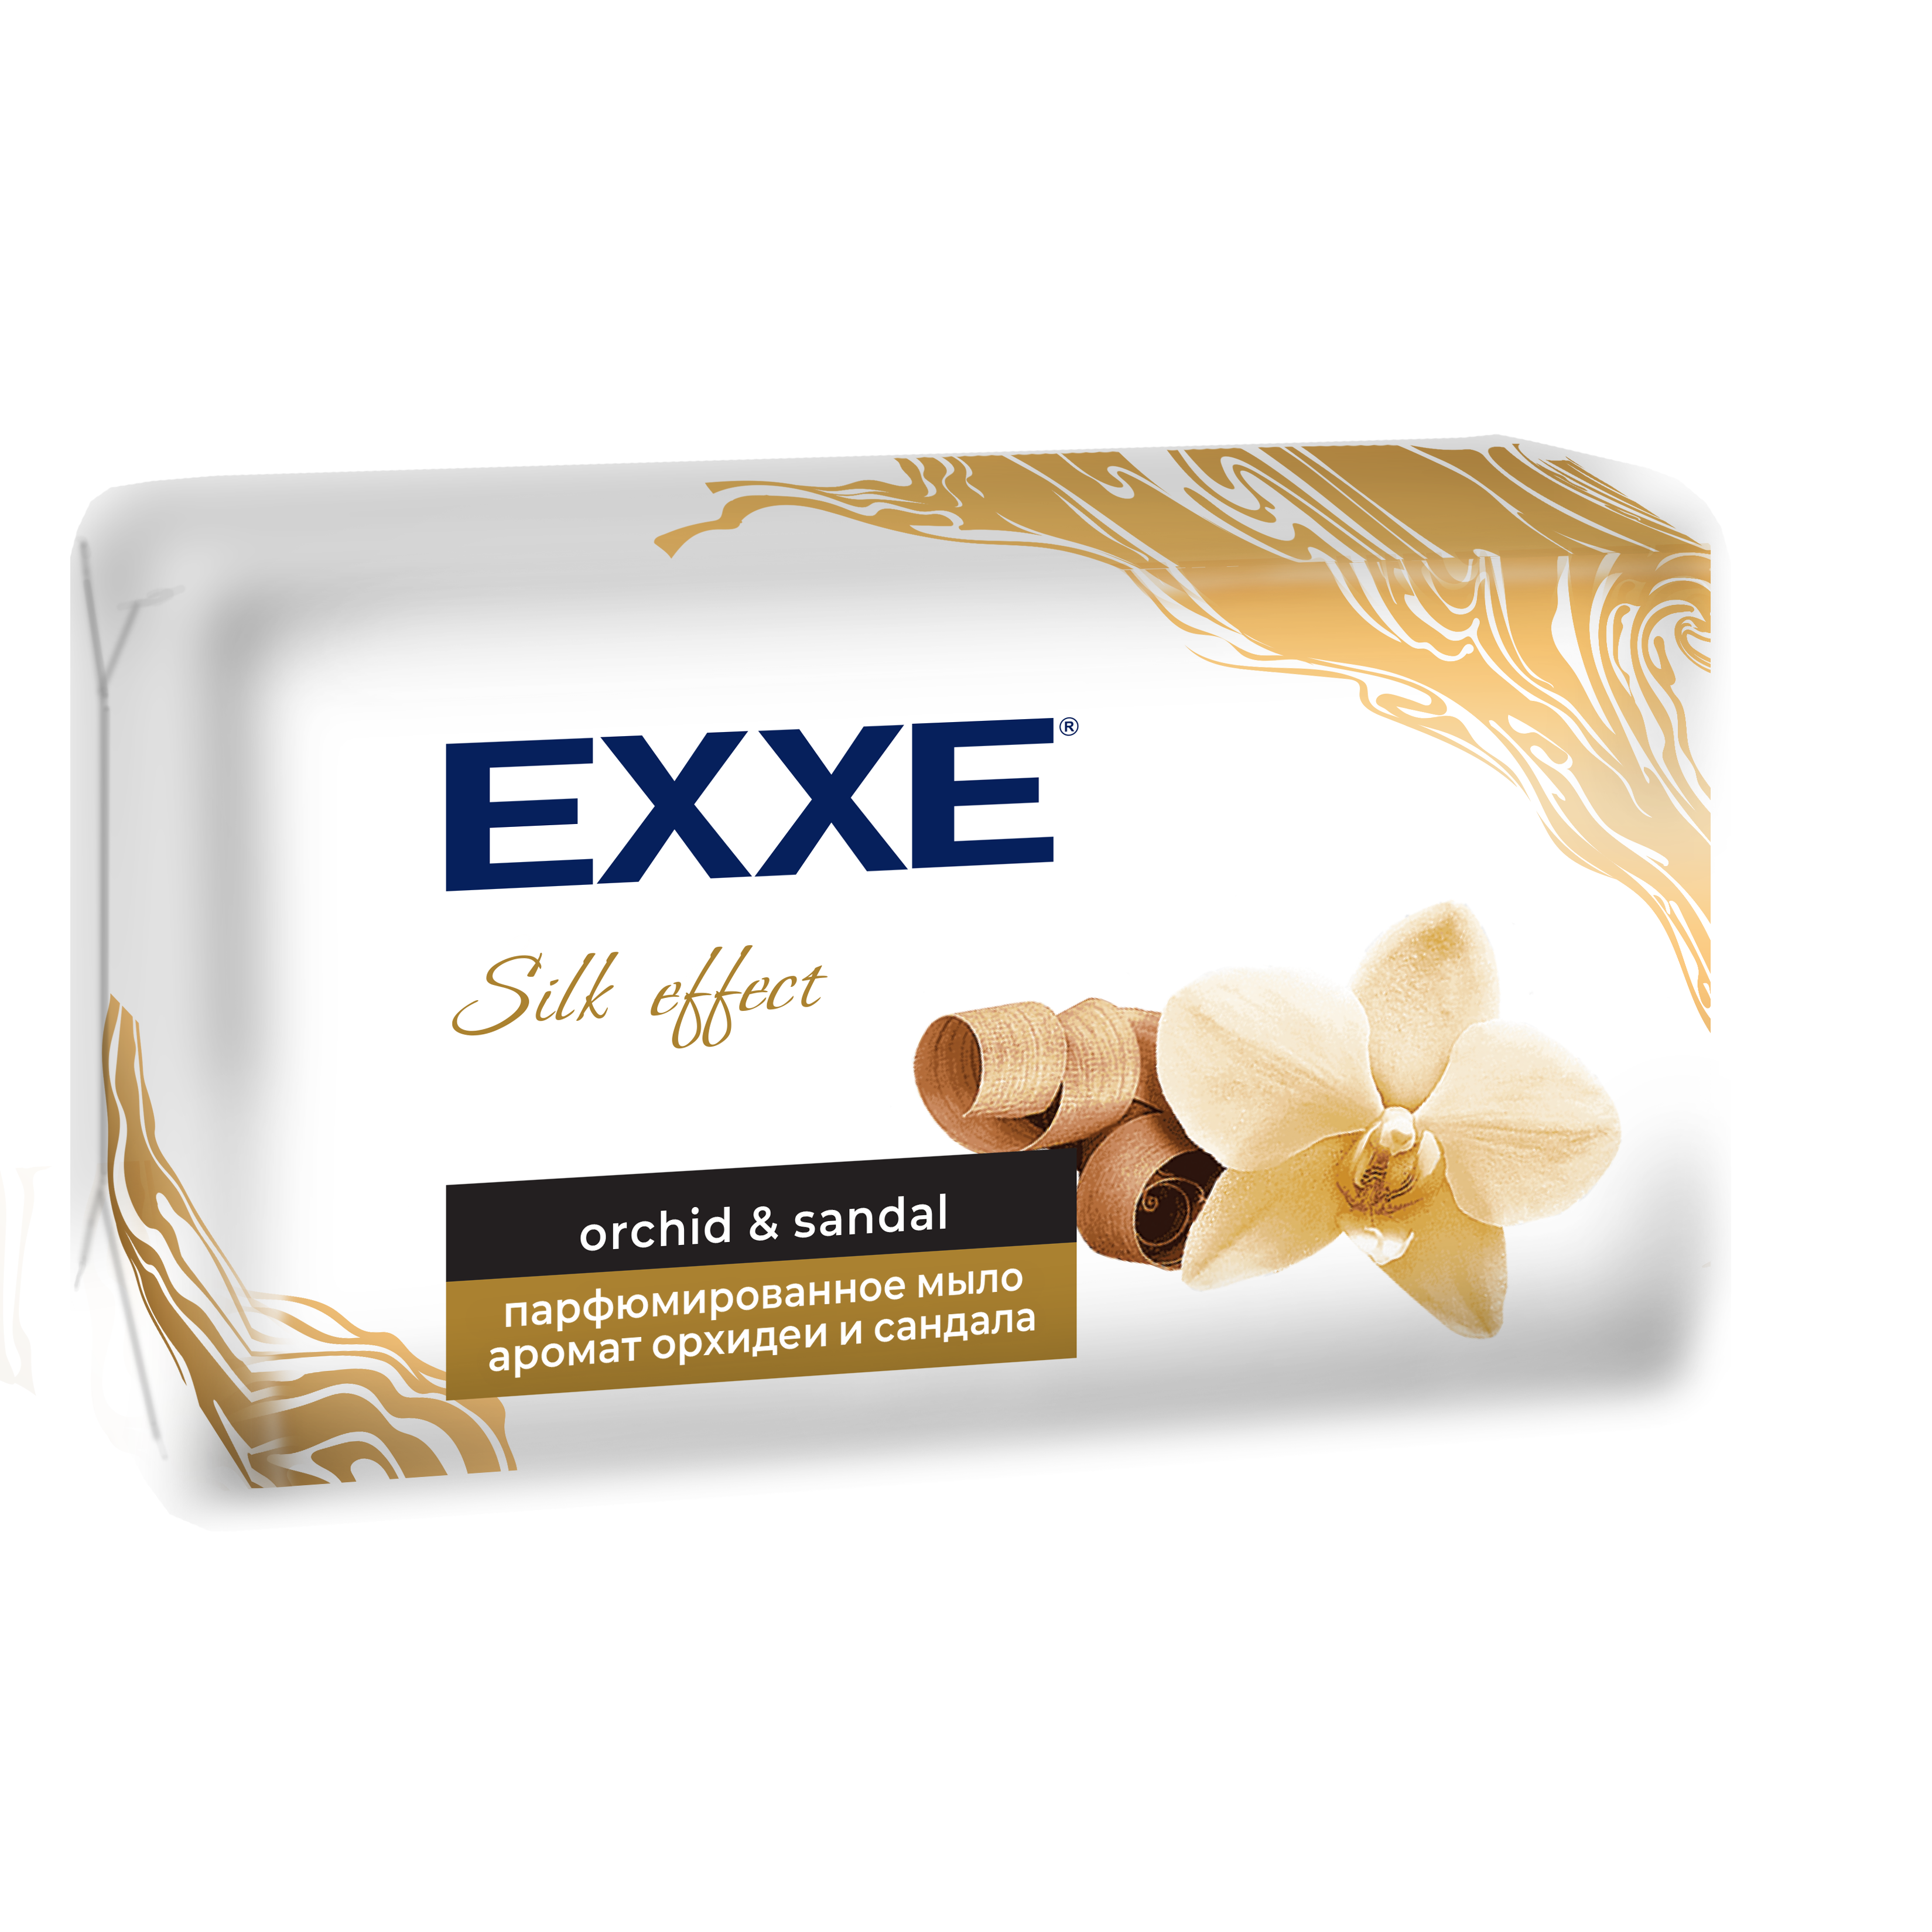 Мыло парфюмированное EXXE Silk Effect аромат Орхидеи и Сандала, 140 г